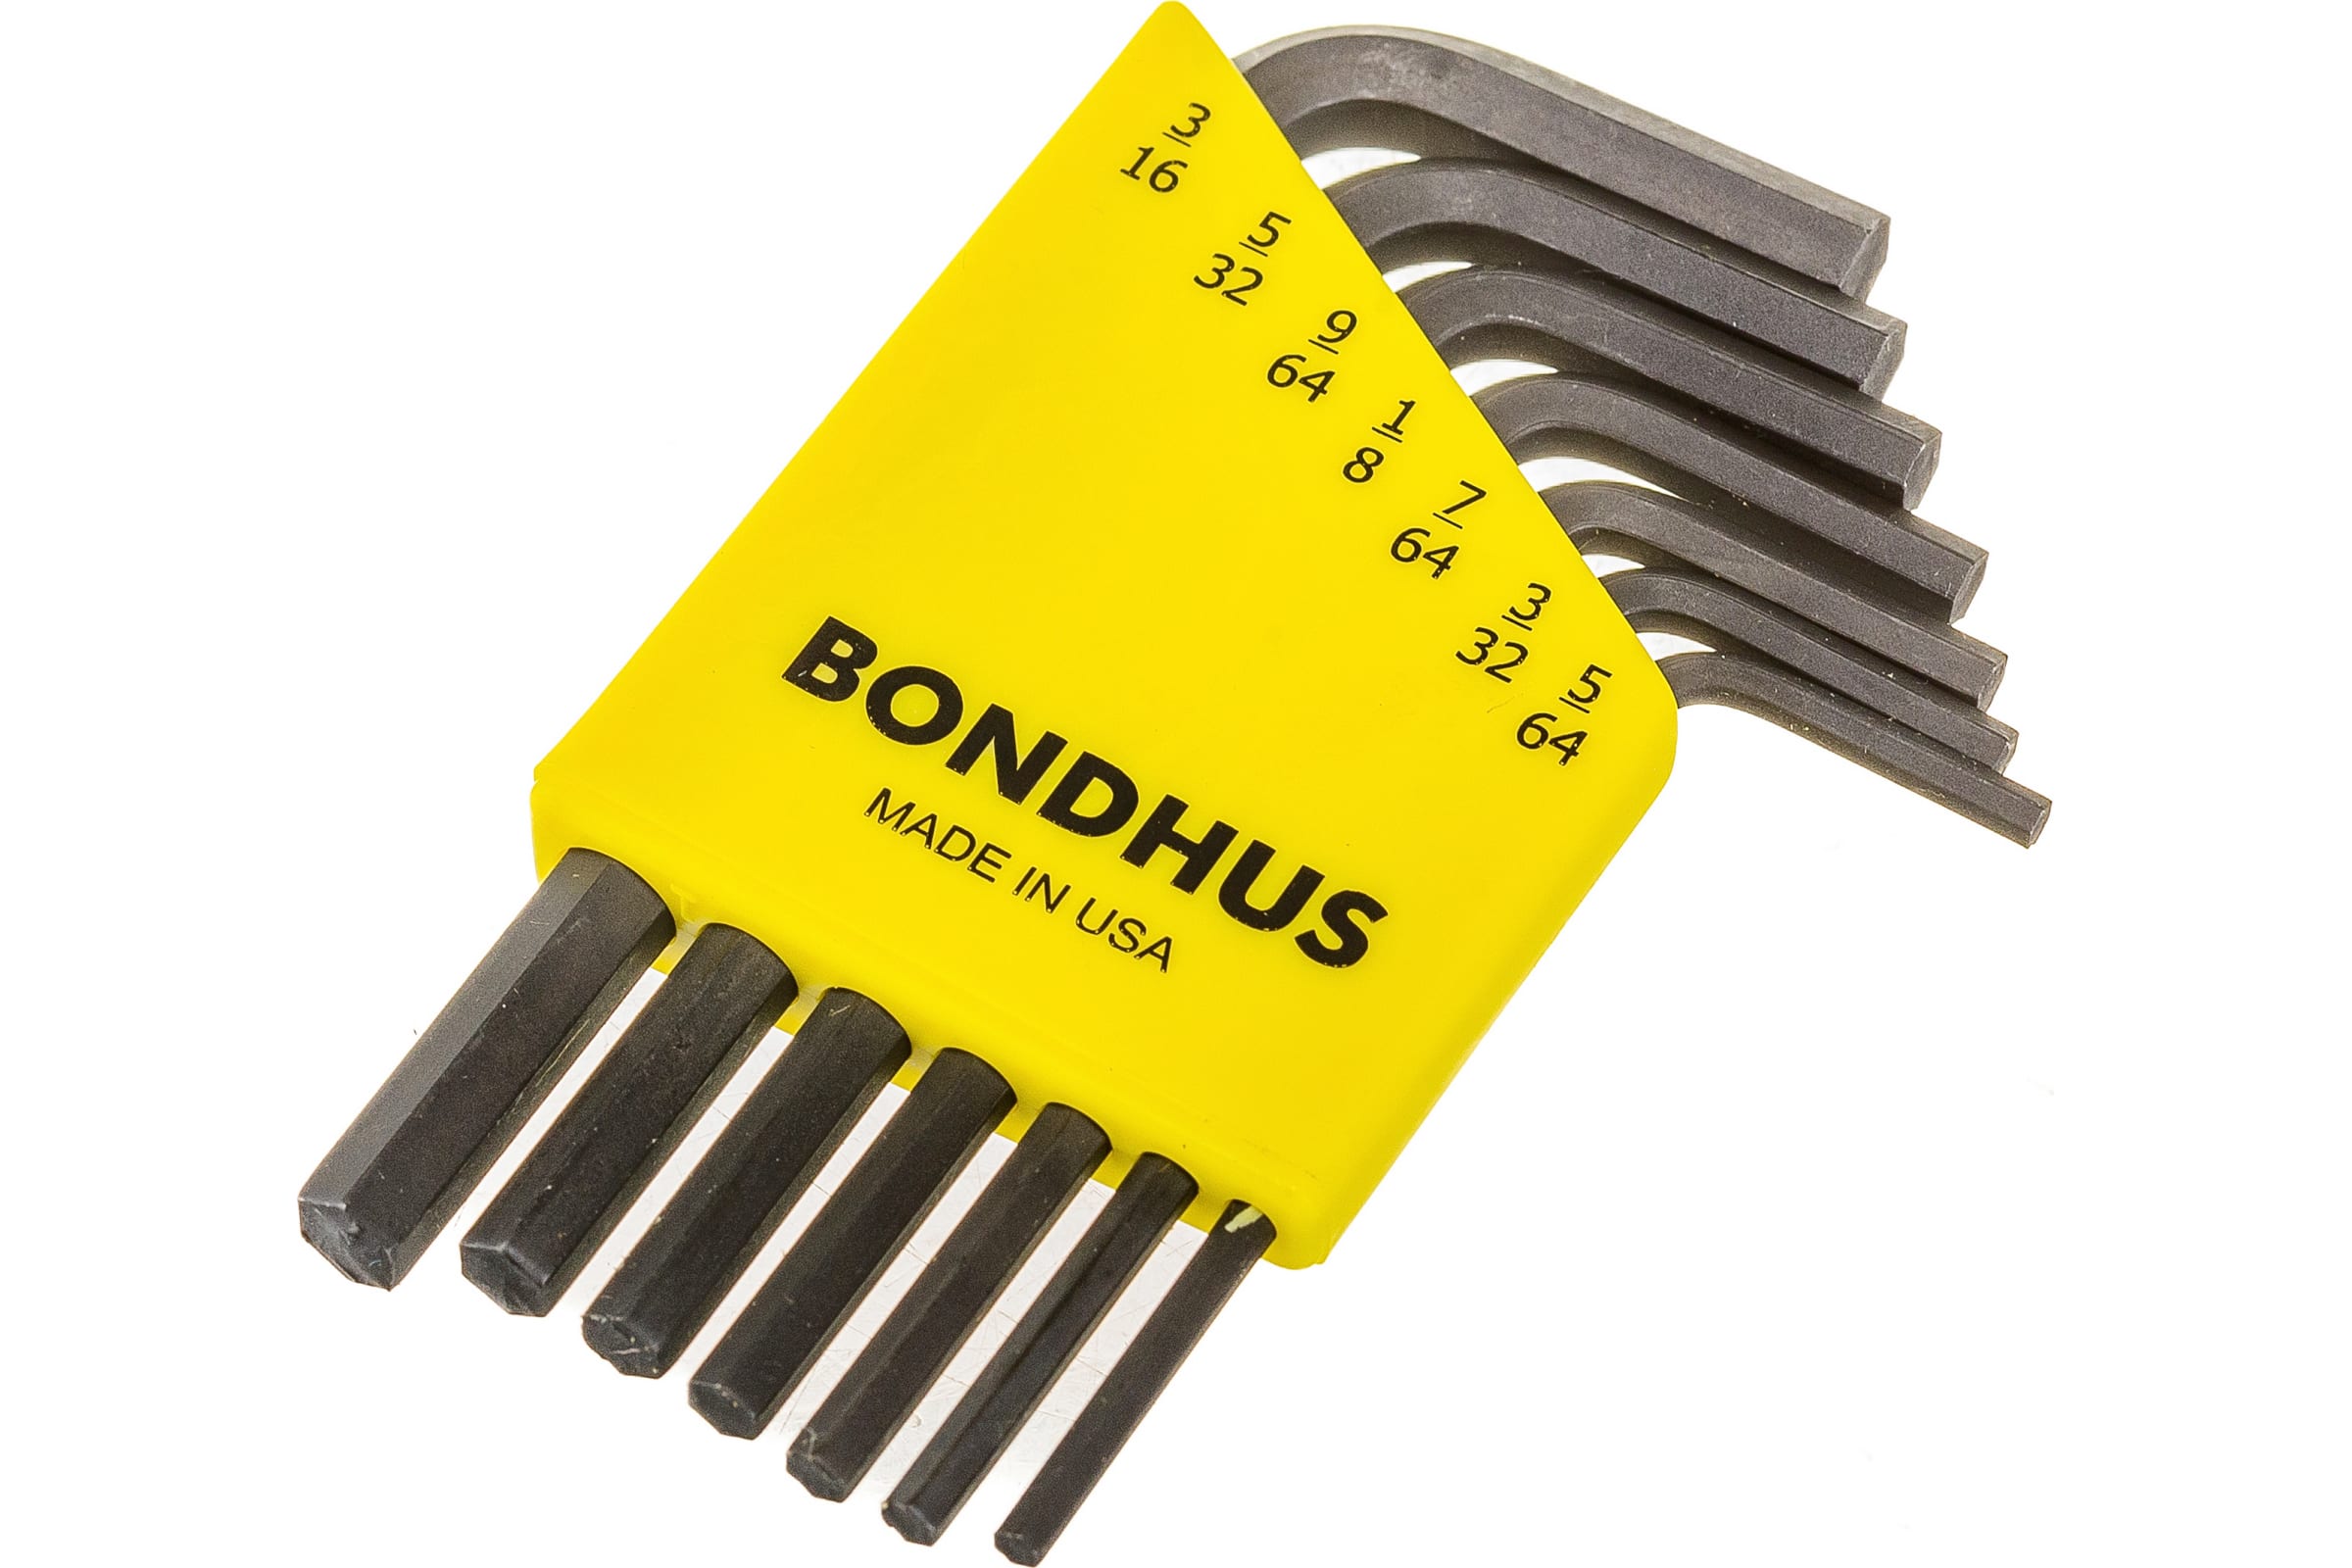 Набор дюймовых шестигранных ключей (5/64"-3/16") Bondhus ProGuard 12245, 7 штук - фото